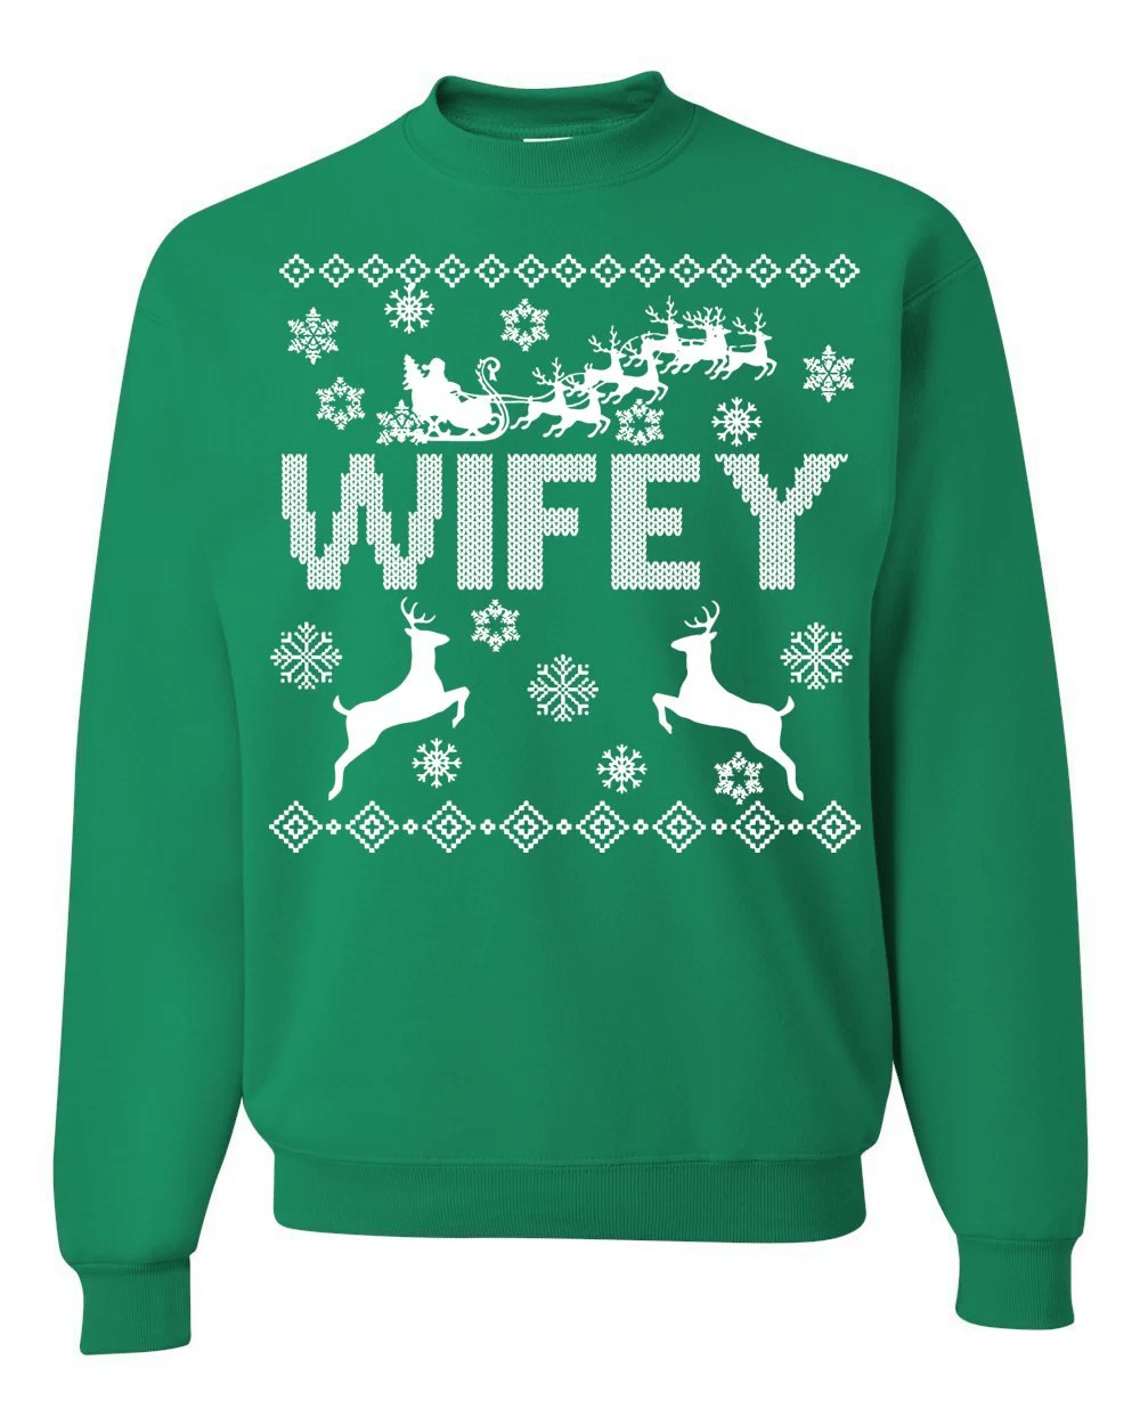 Hubby Wifey Couple Matching Christmas Sweatshirt Style: Wifey, Color: Green